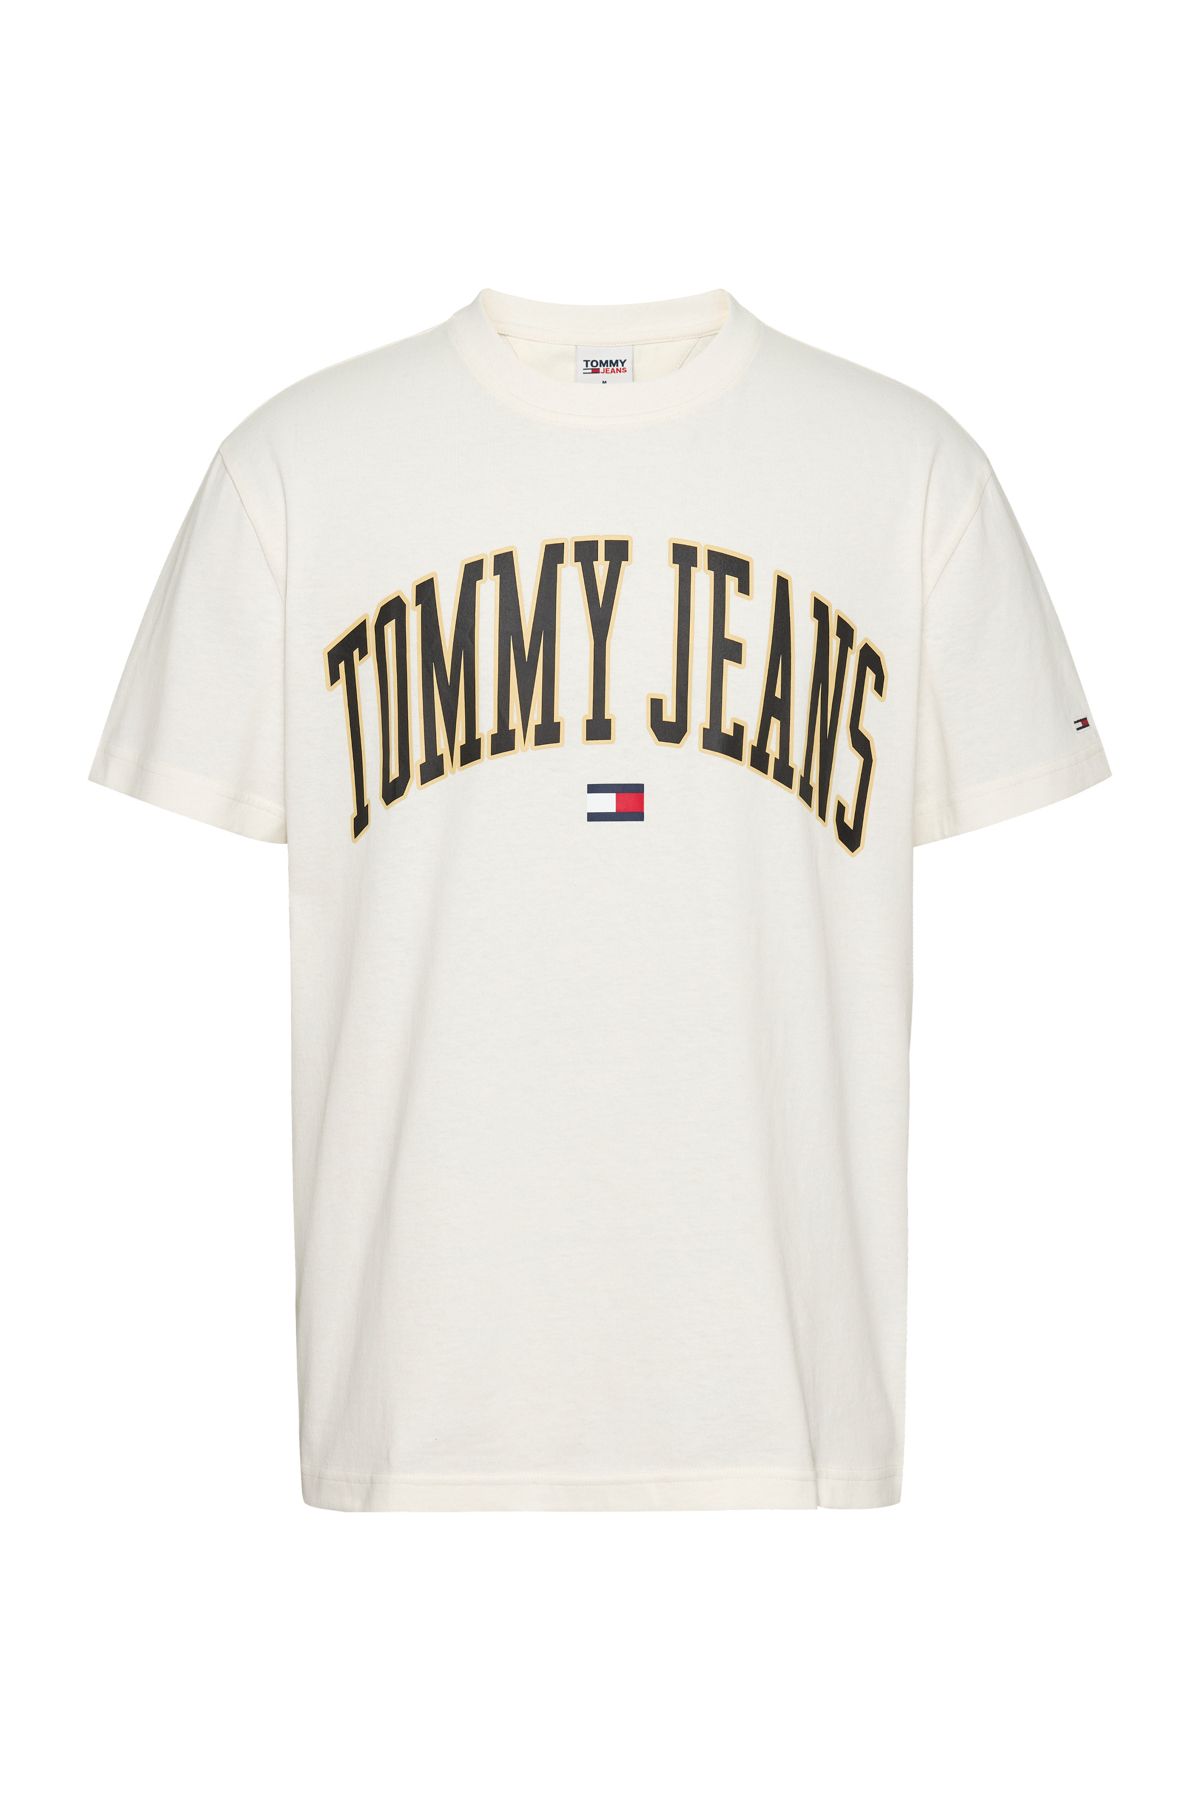 Tommy Hilfiger T-Shirt Herren Ancient White - Trendyol